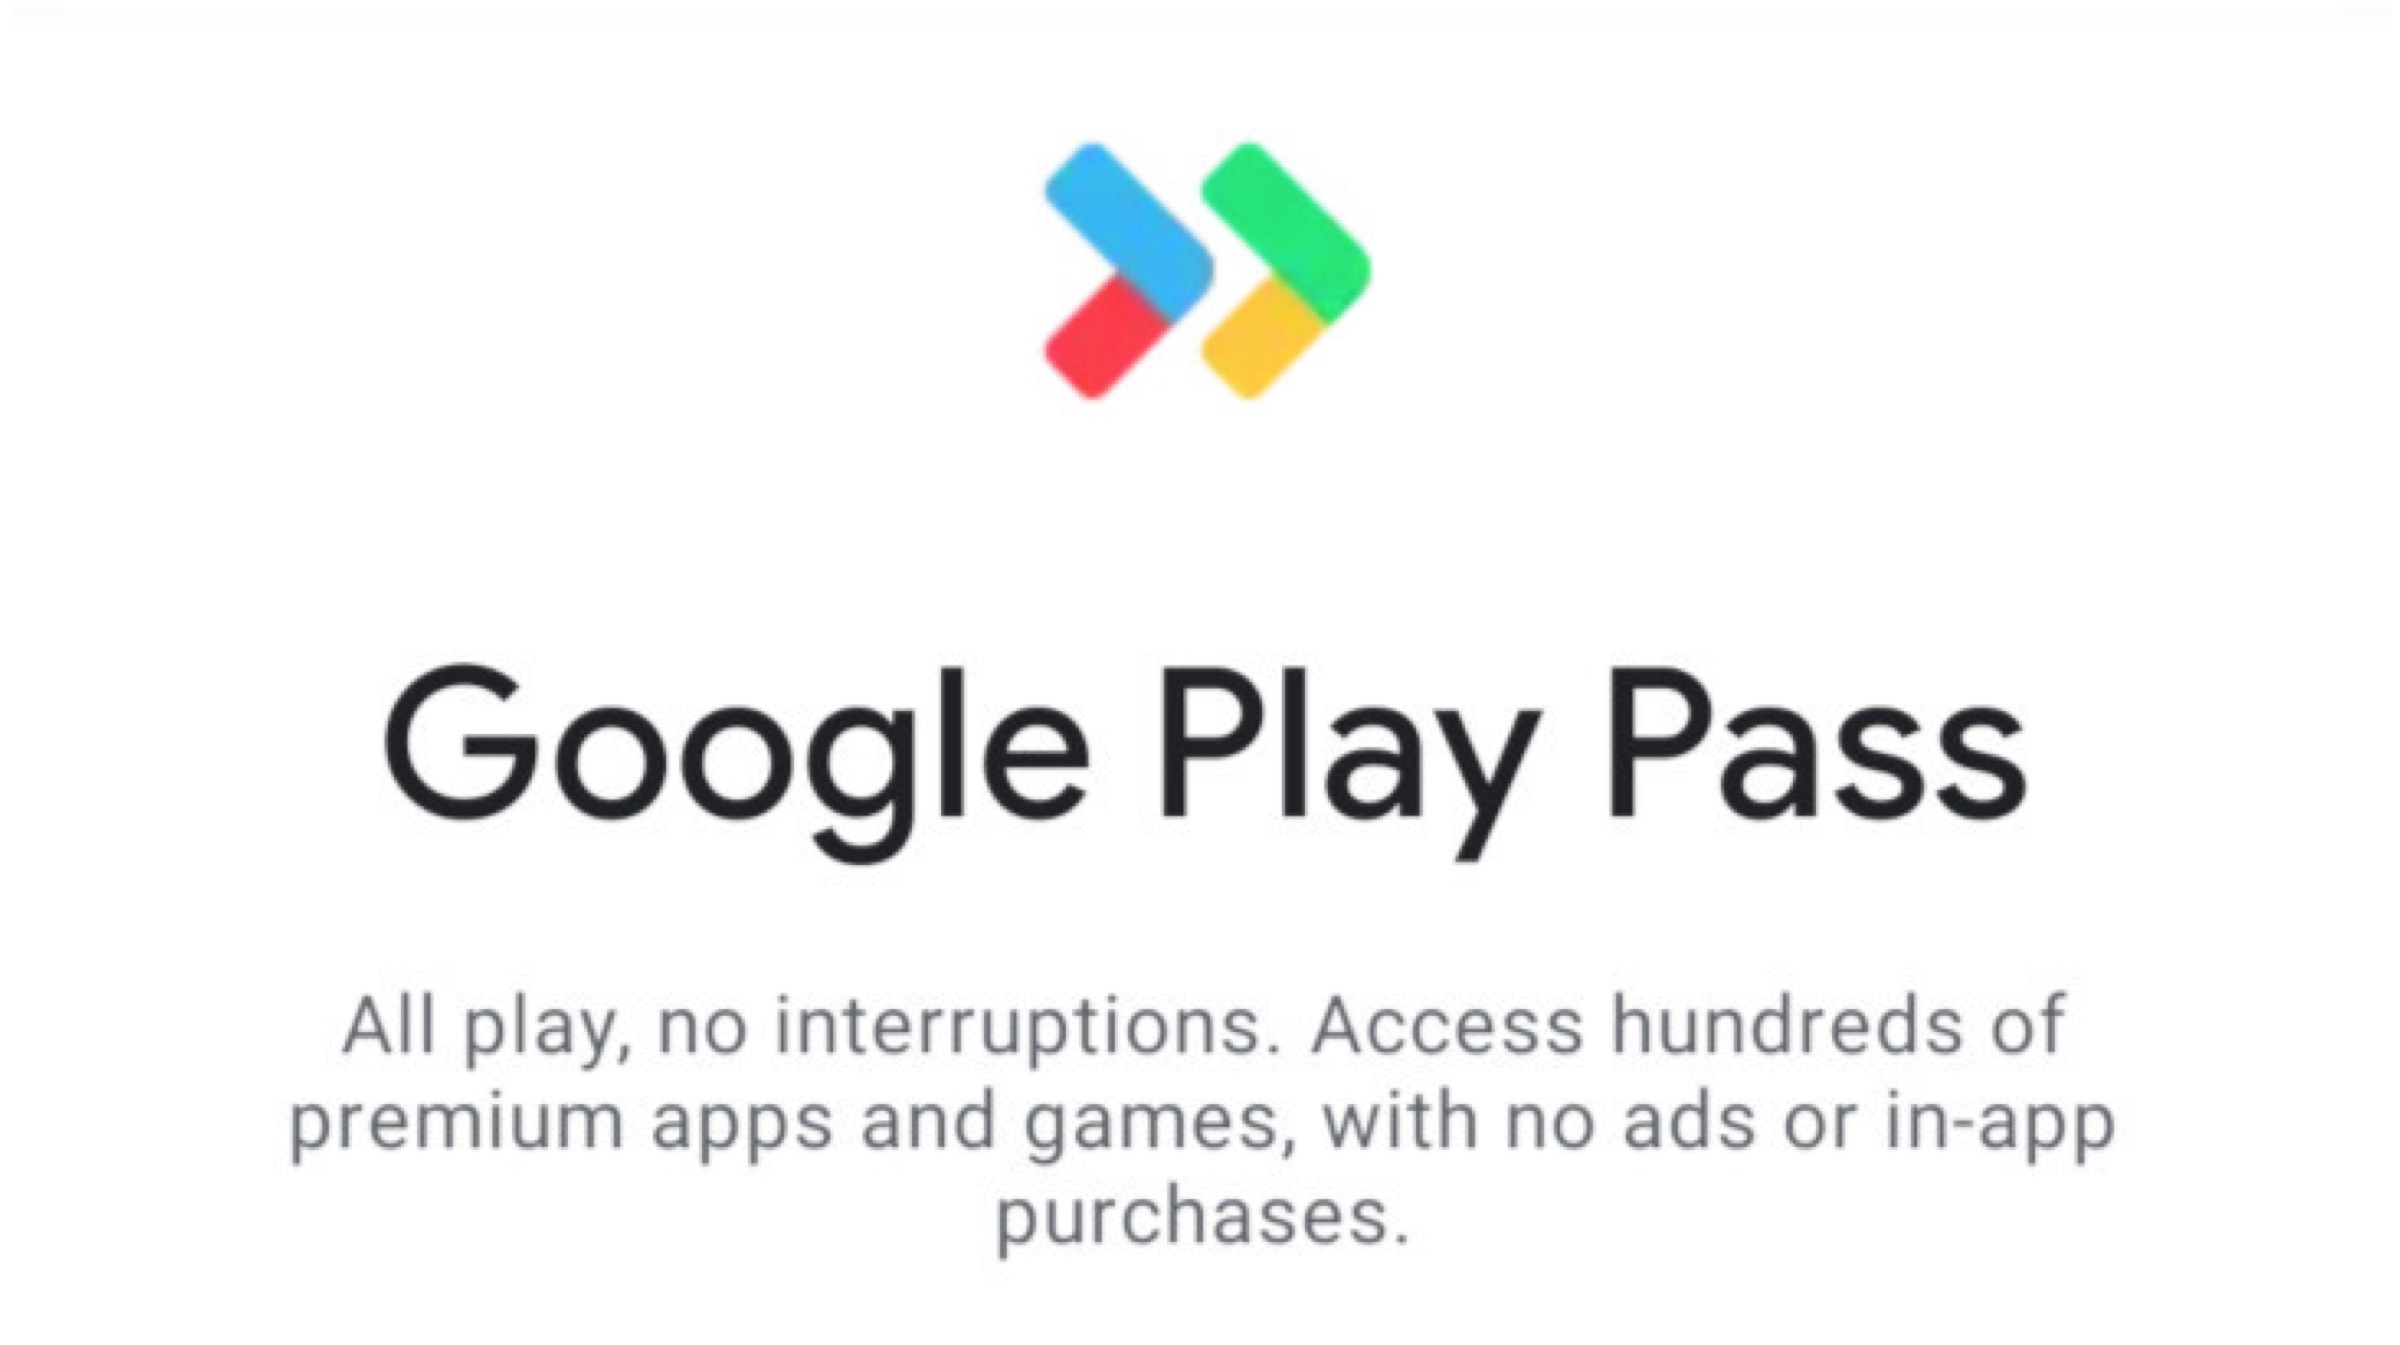 Gms google play. Google Play. Google Play Pass. Google Play services. Google Play Pass games.